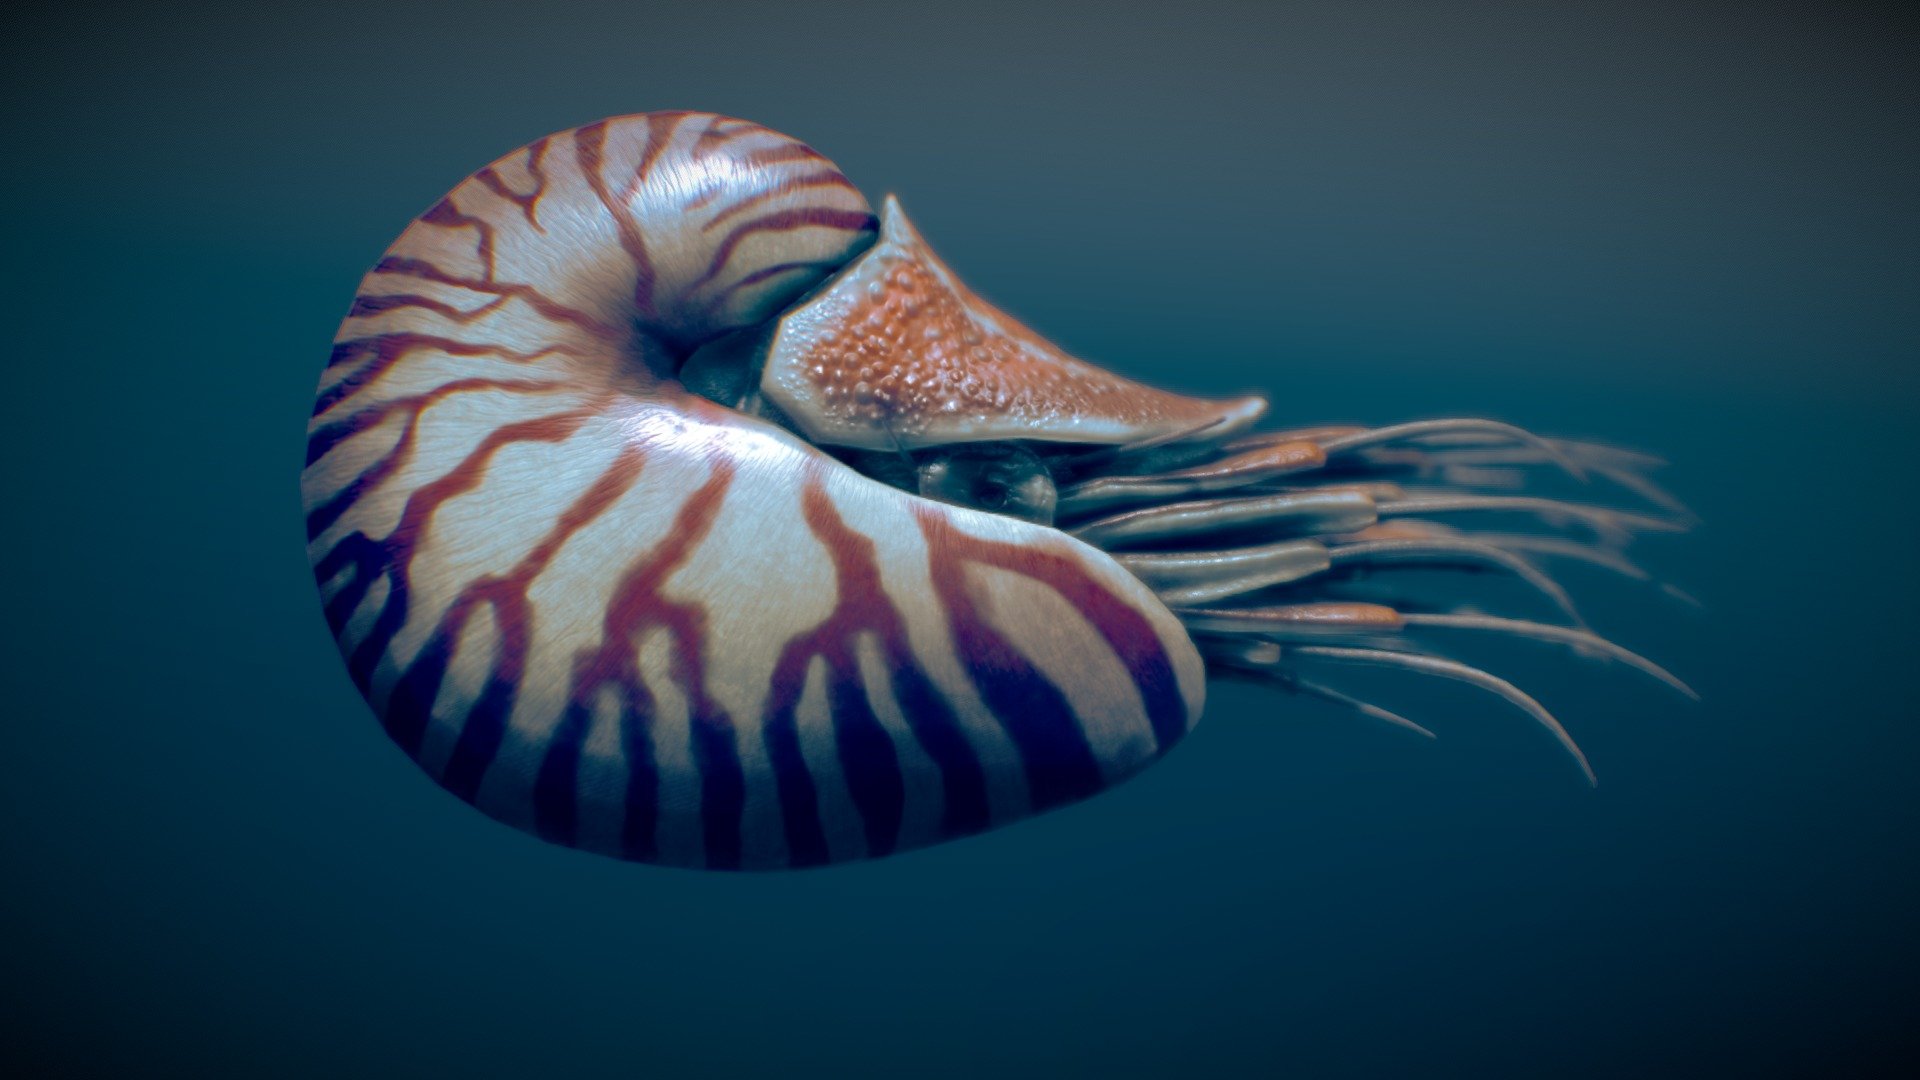 Беспозвоночные животные моллюски примеры. Головоногие моллюски Наутилус. Наутилус Помпилиус моллюск. Моллюск Аргонавт Наутилус. Наутилус Помпилиус моллюск раковина.